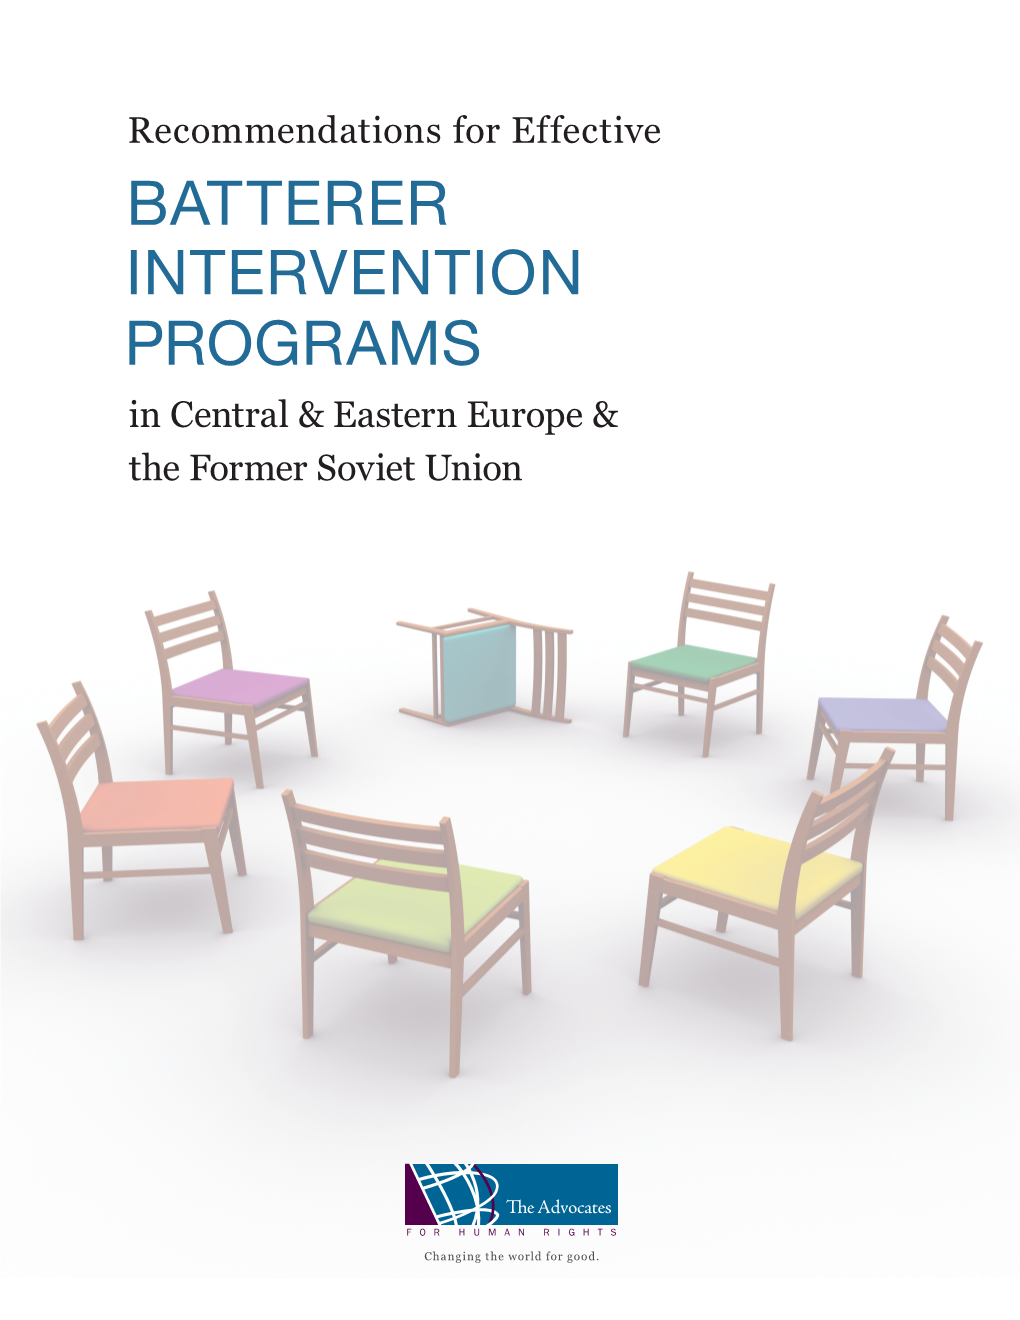 BATTERER INTERVENTION PROGRAMS in Central & Eastern Europe & the Former Soviet Union